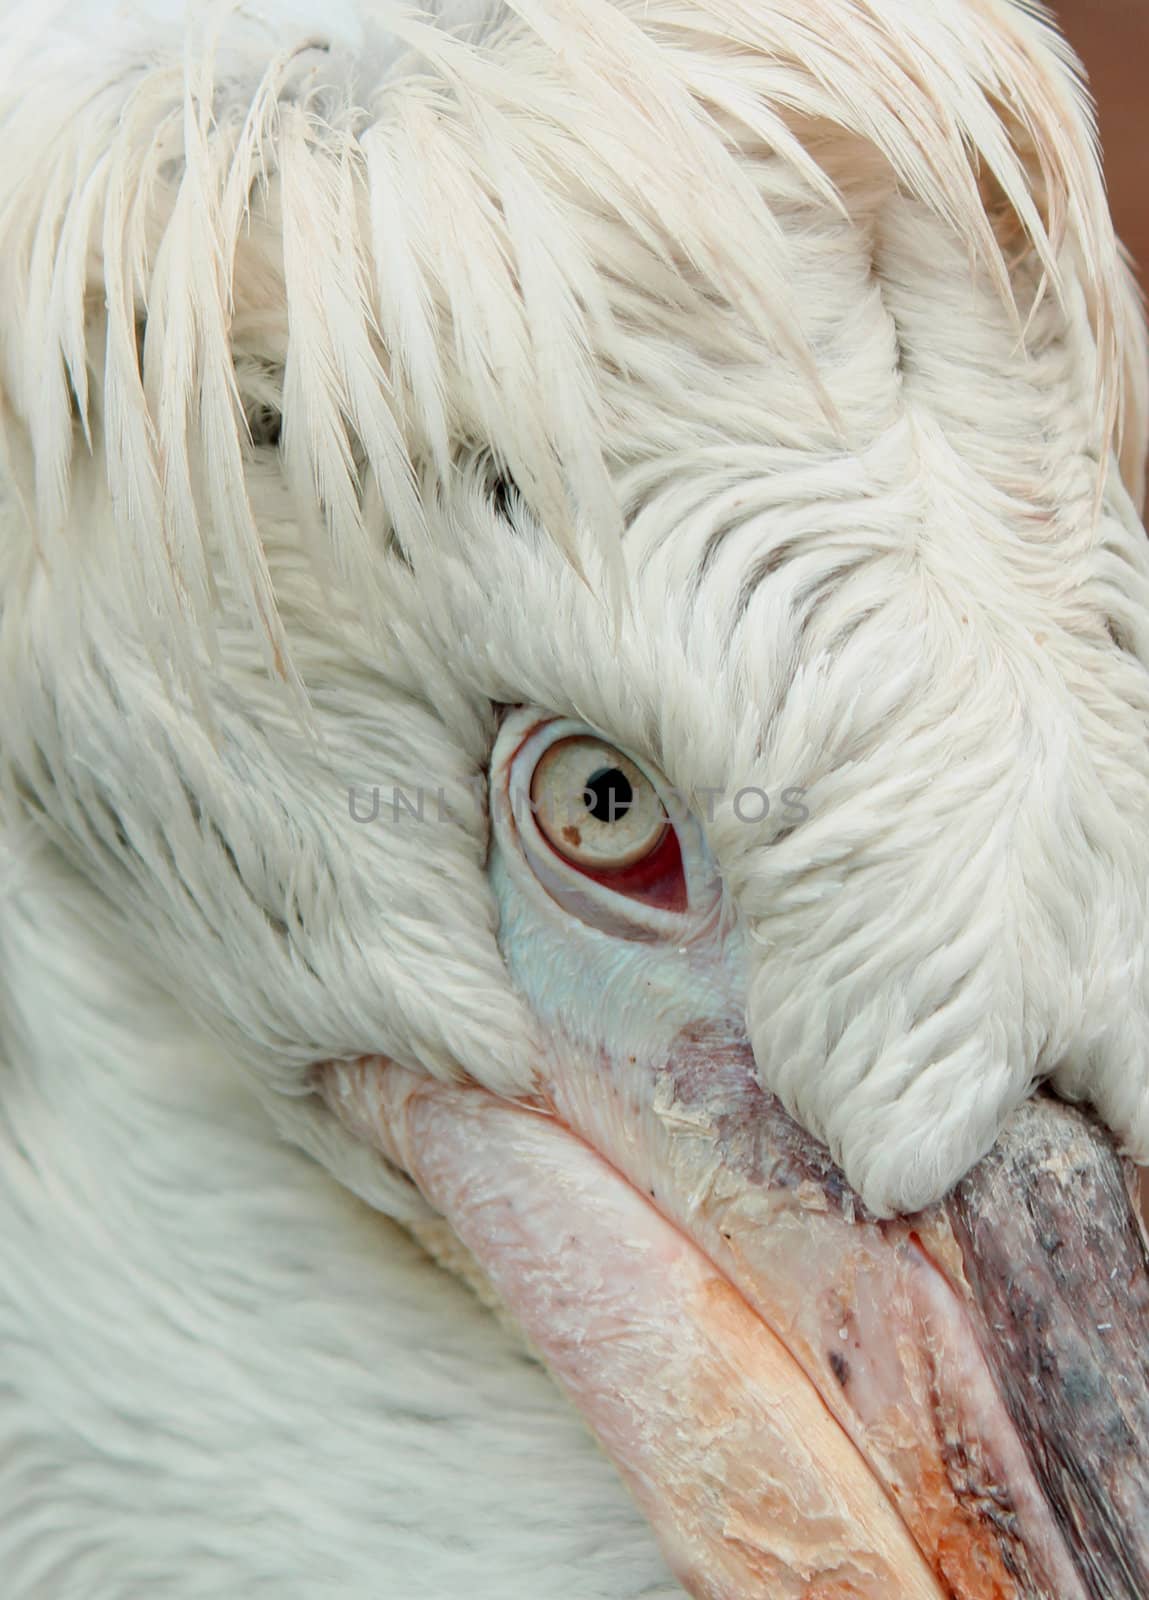 pelican close up portrait